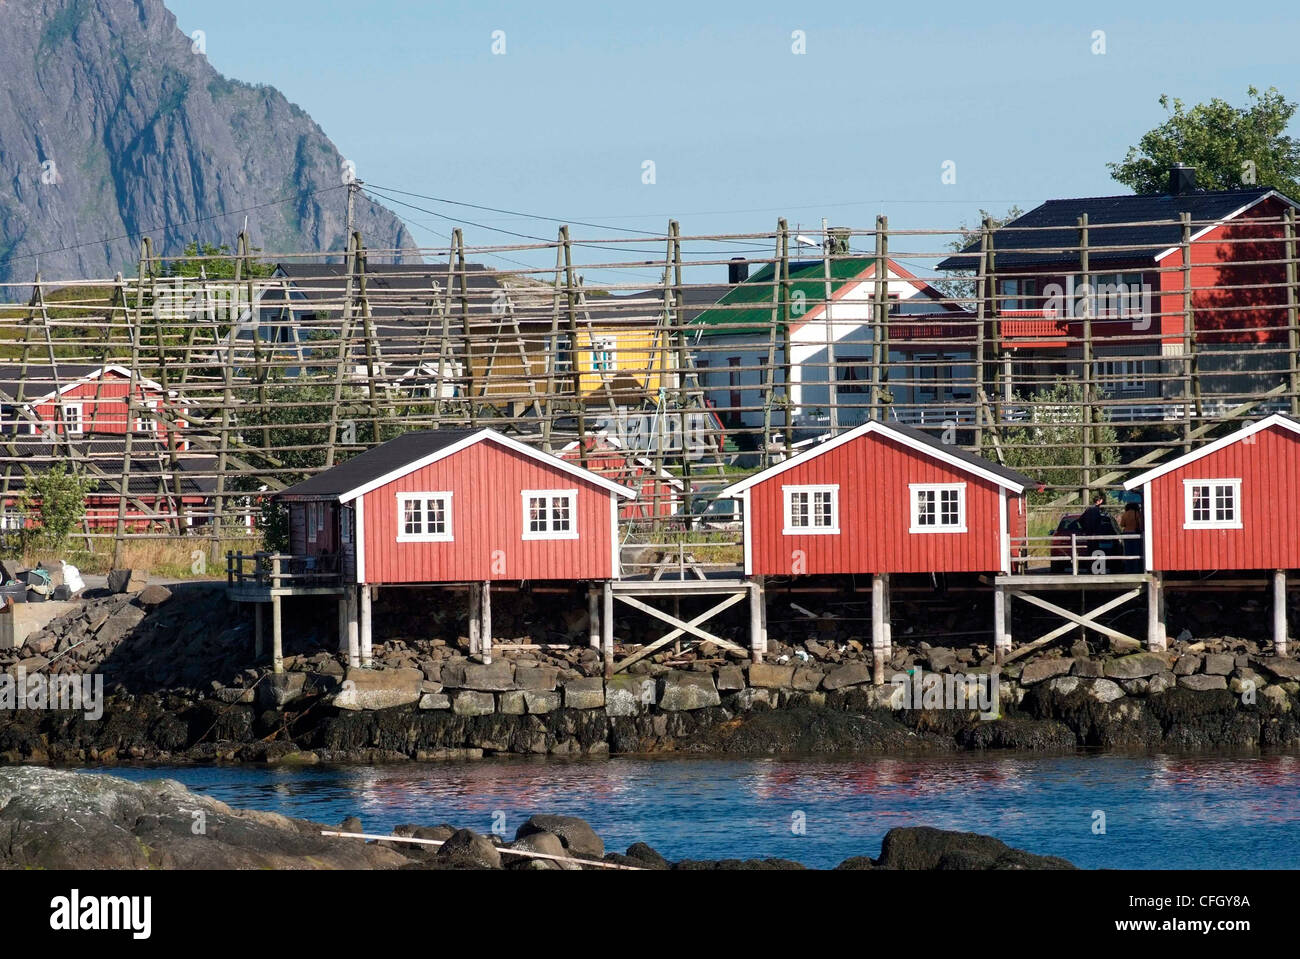 Norvegia Isole Lofoten Svolvaer - isola del gruppo di case di capitale, pesce rack di asciugatura. Foto Stock